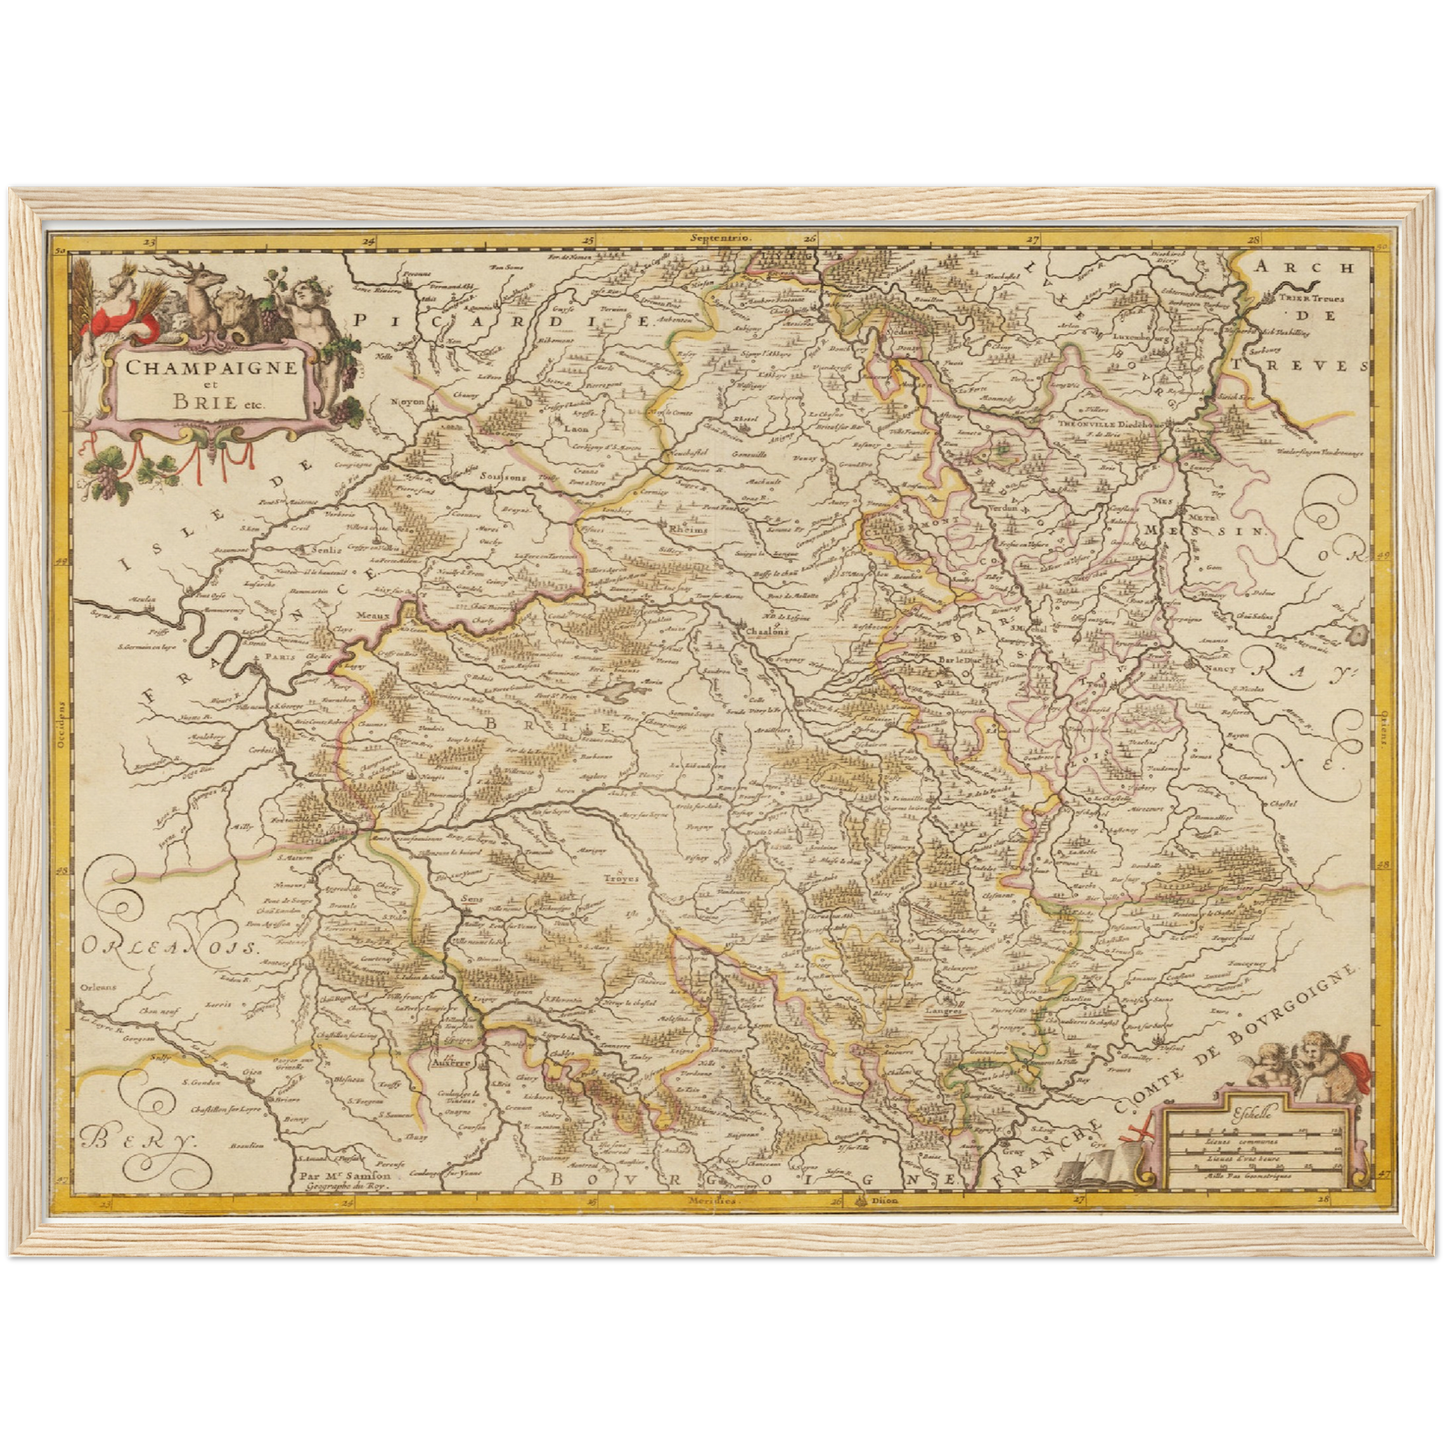 Historische Landkarte Champagne um 1698